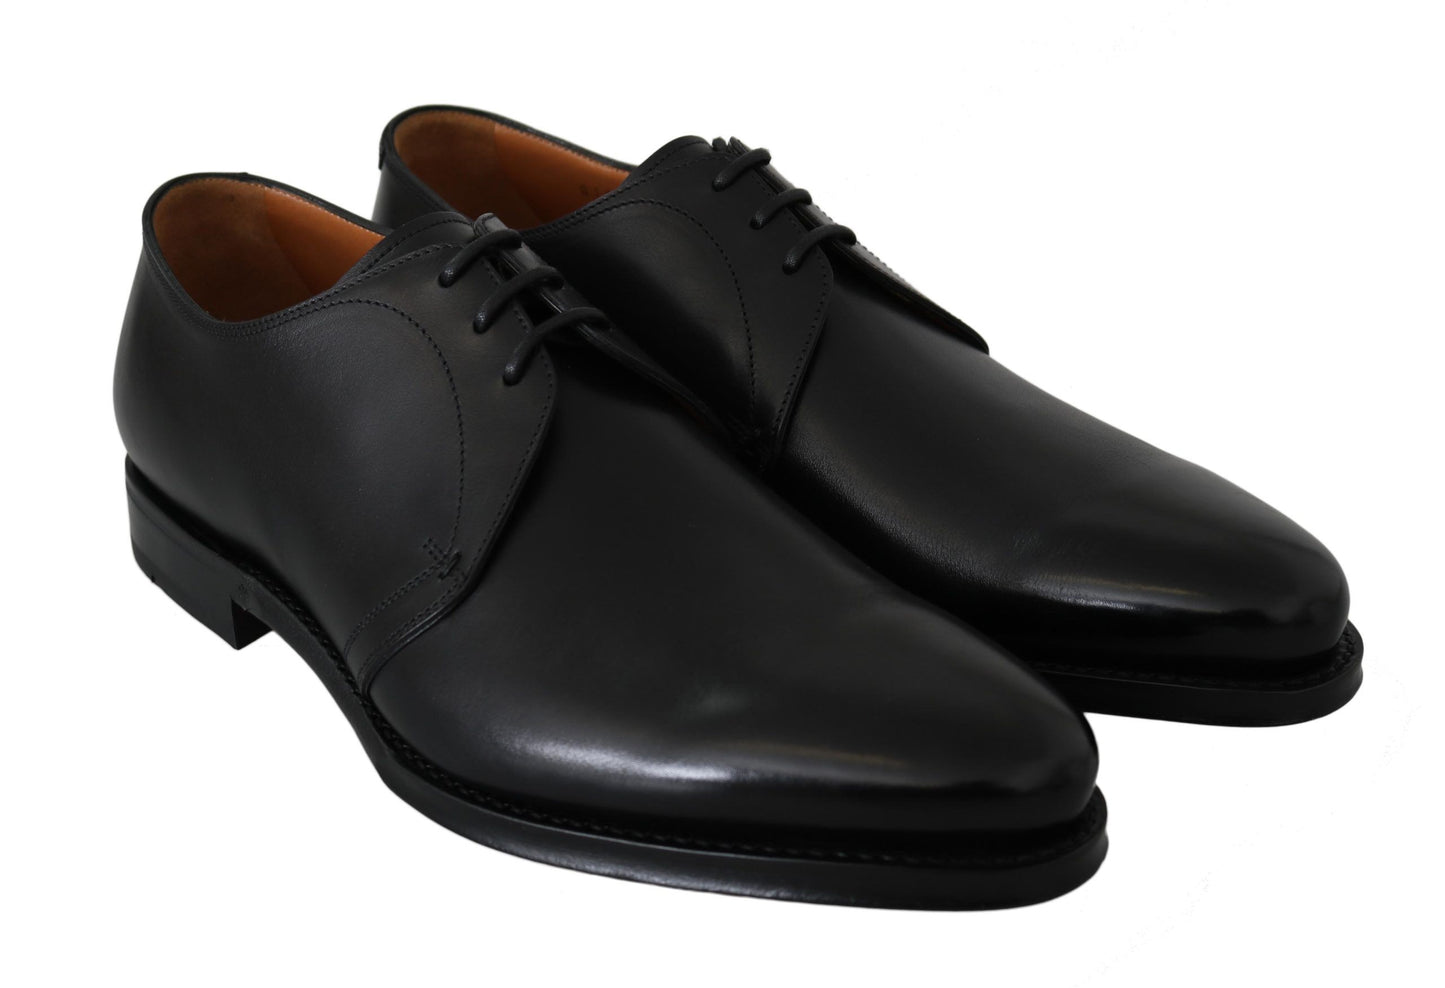 Black Calfskin Lace Up Men Formal Derby Shoes